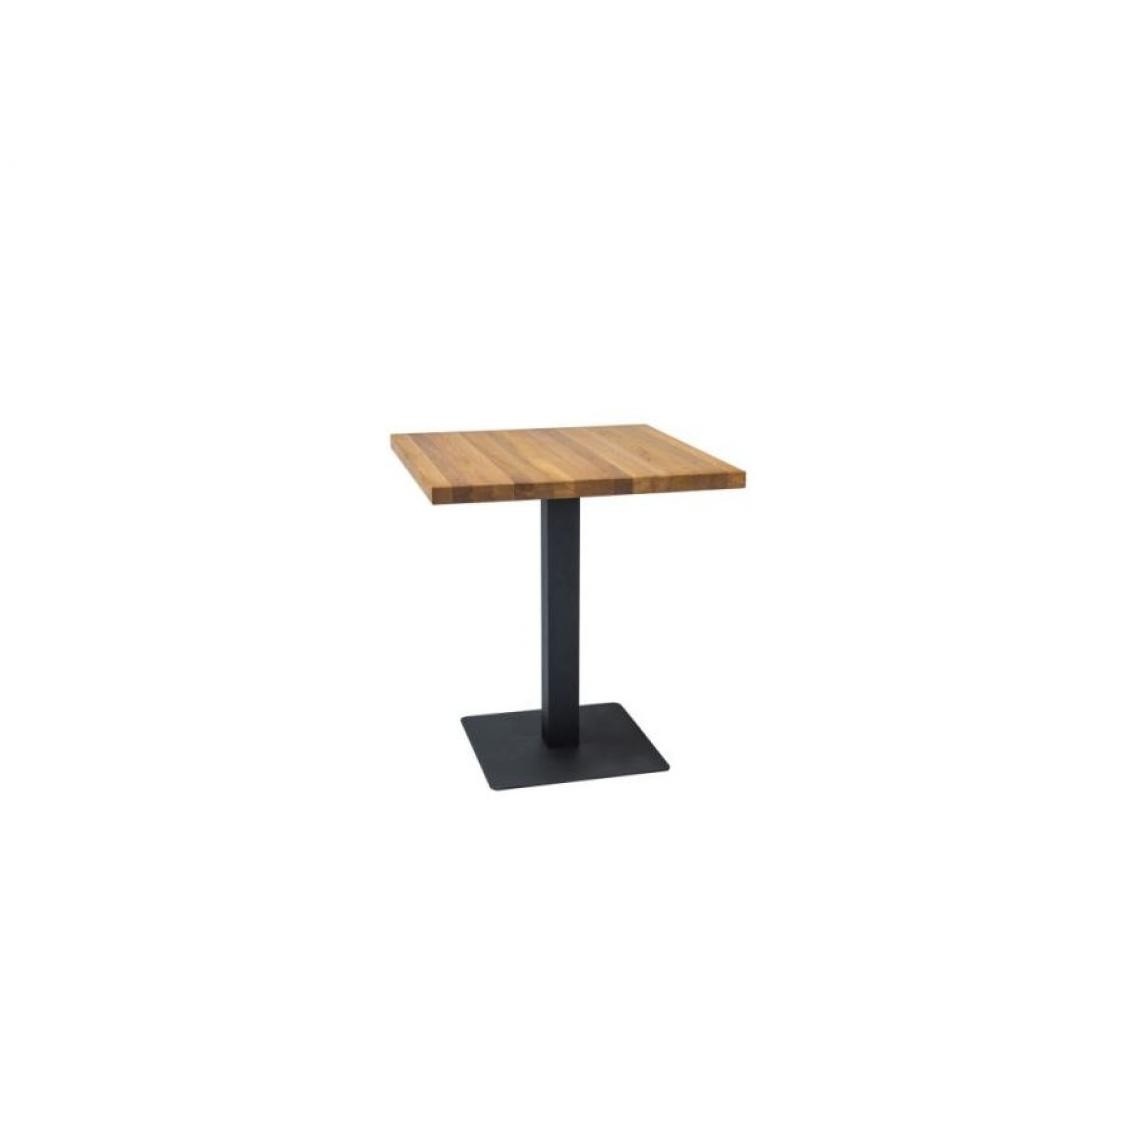 Hucoco - PUFO - Table de style loft avec piètement en métal - 80x80x76 cm - Plateau carré en placage naturel - Table fixe - Chêne - Tables à manger